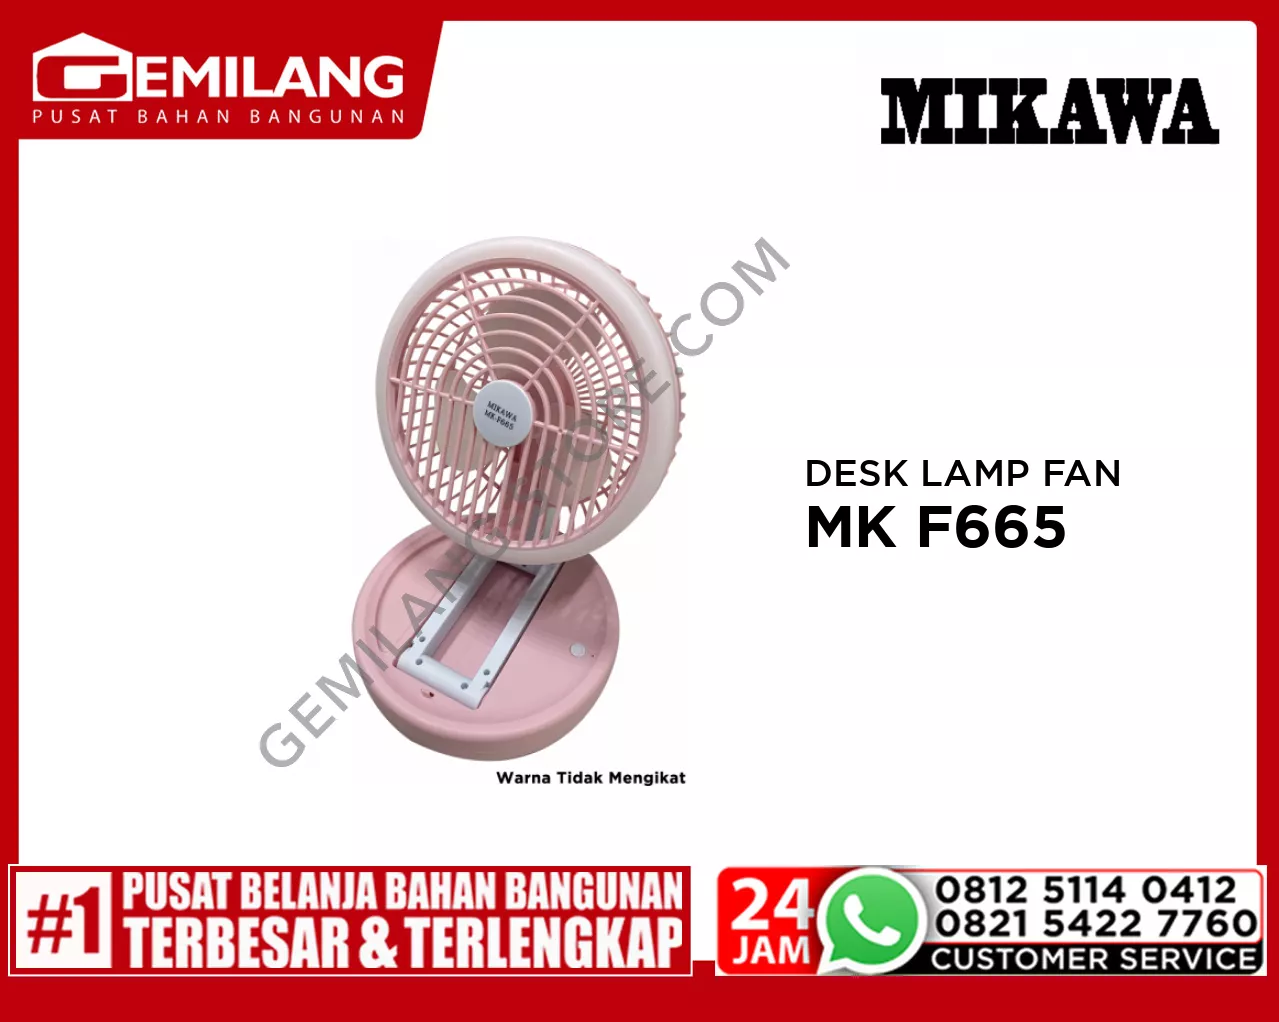 MIKAWA DESK LAMP FAN MK F665